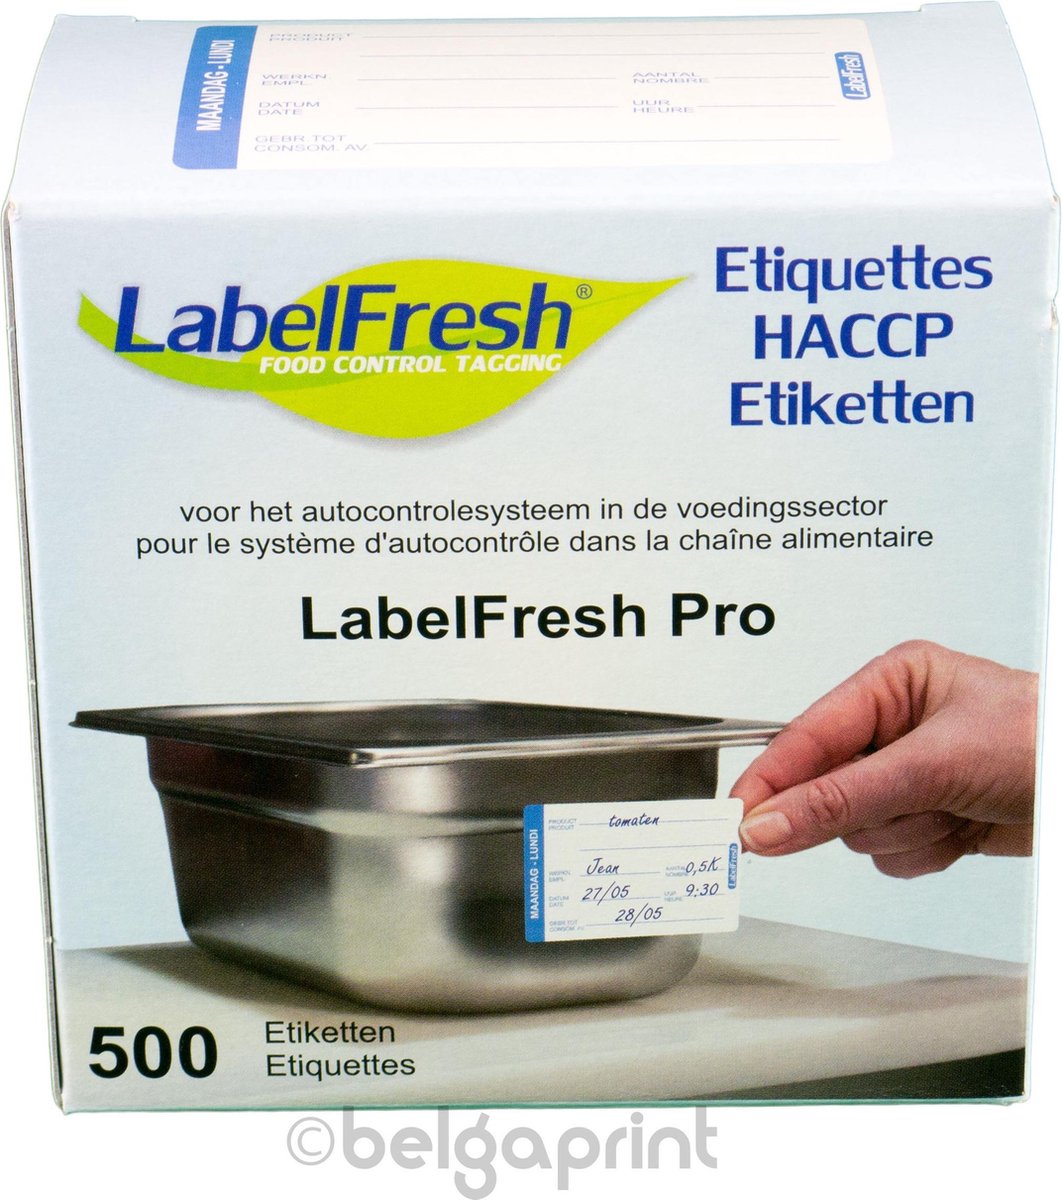 500 LabelFresh Pro - 70x45 mm - maandag-lundi - HACCP etiketten / stickers